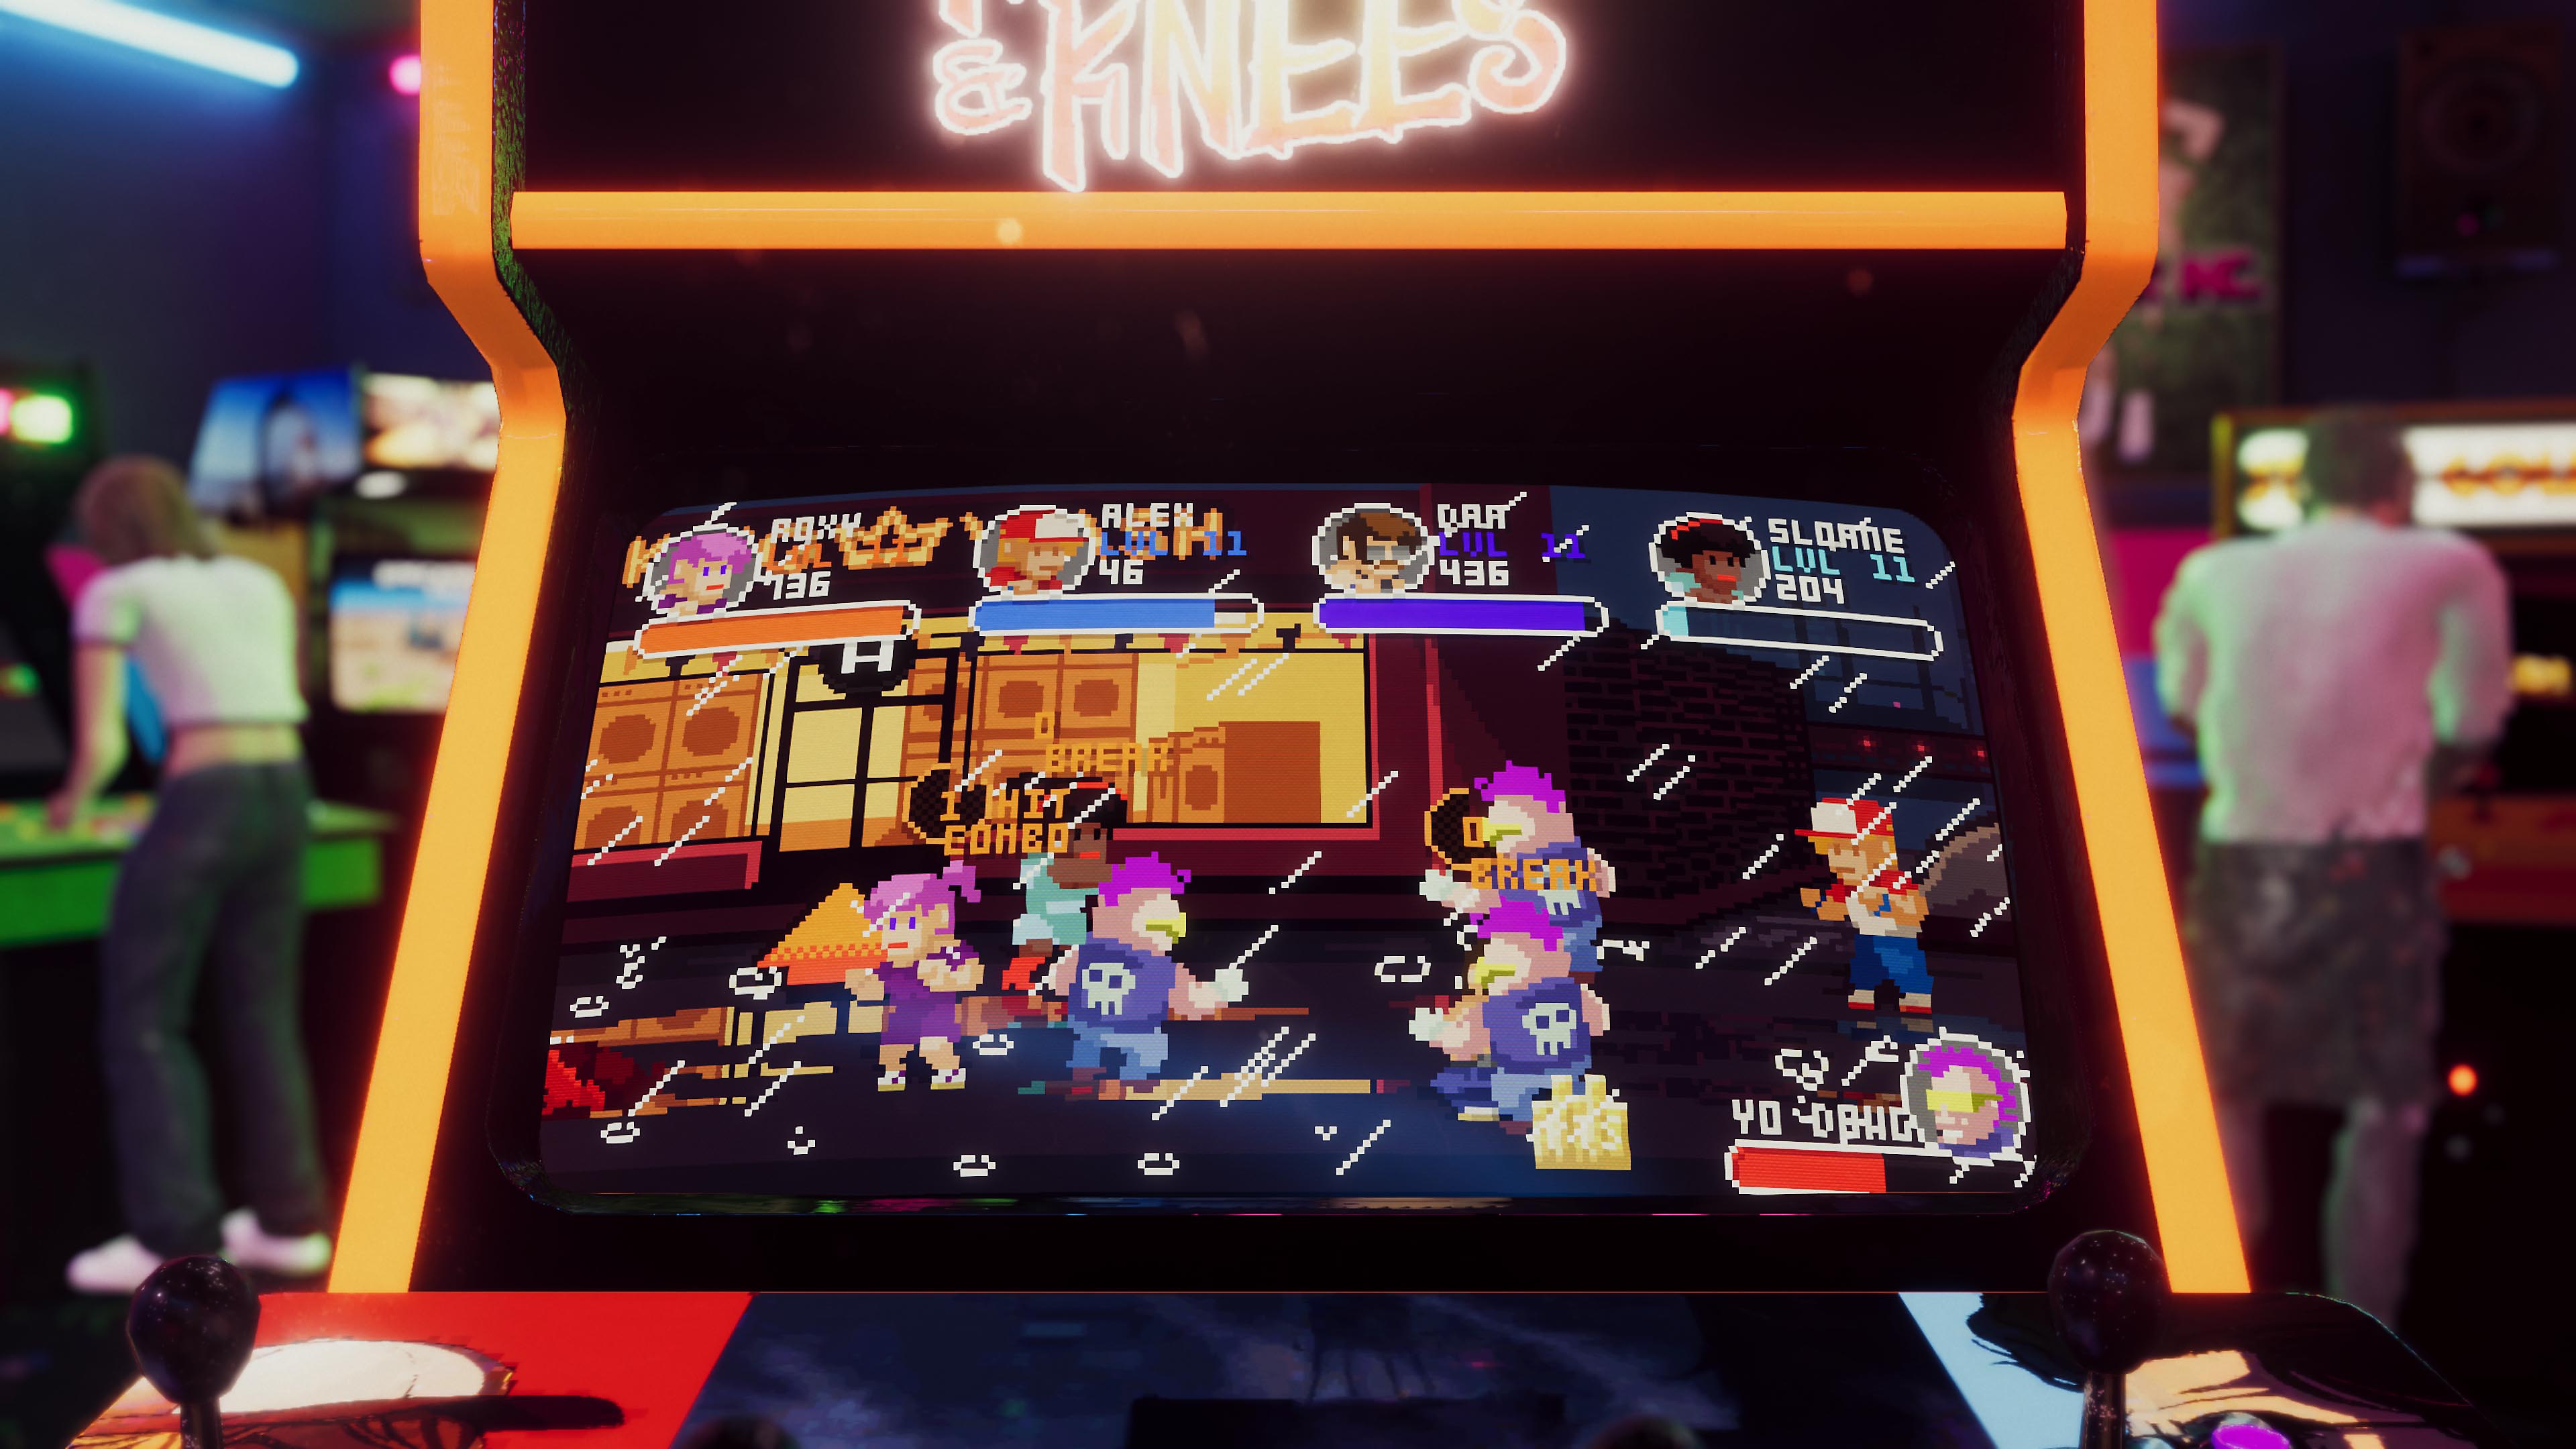 Arcade Paradise – kuvakaappaus pelikabinetista, jossa on retrohenkinen pelihallipeli